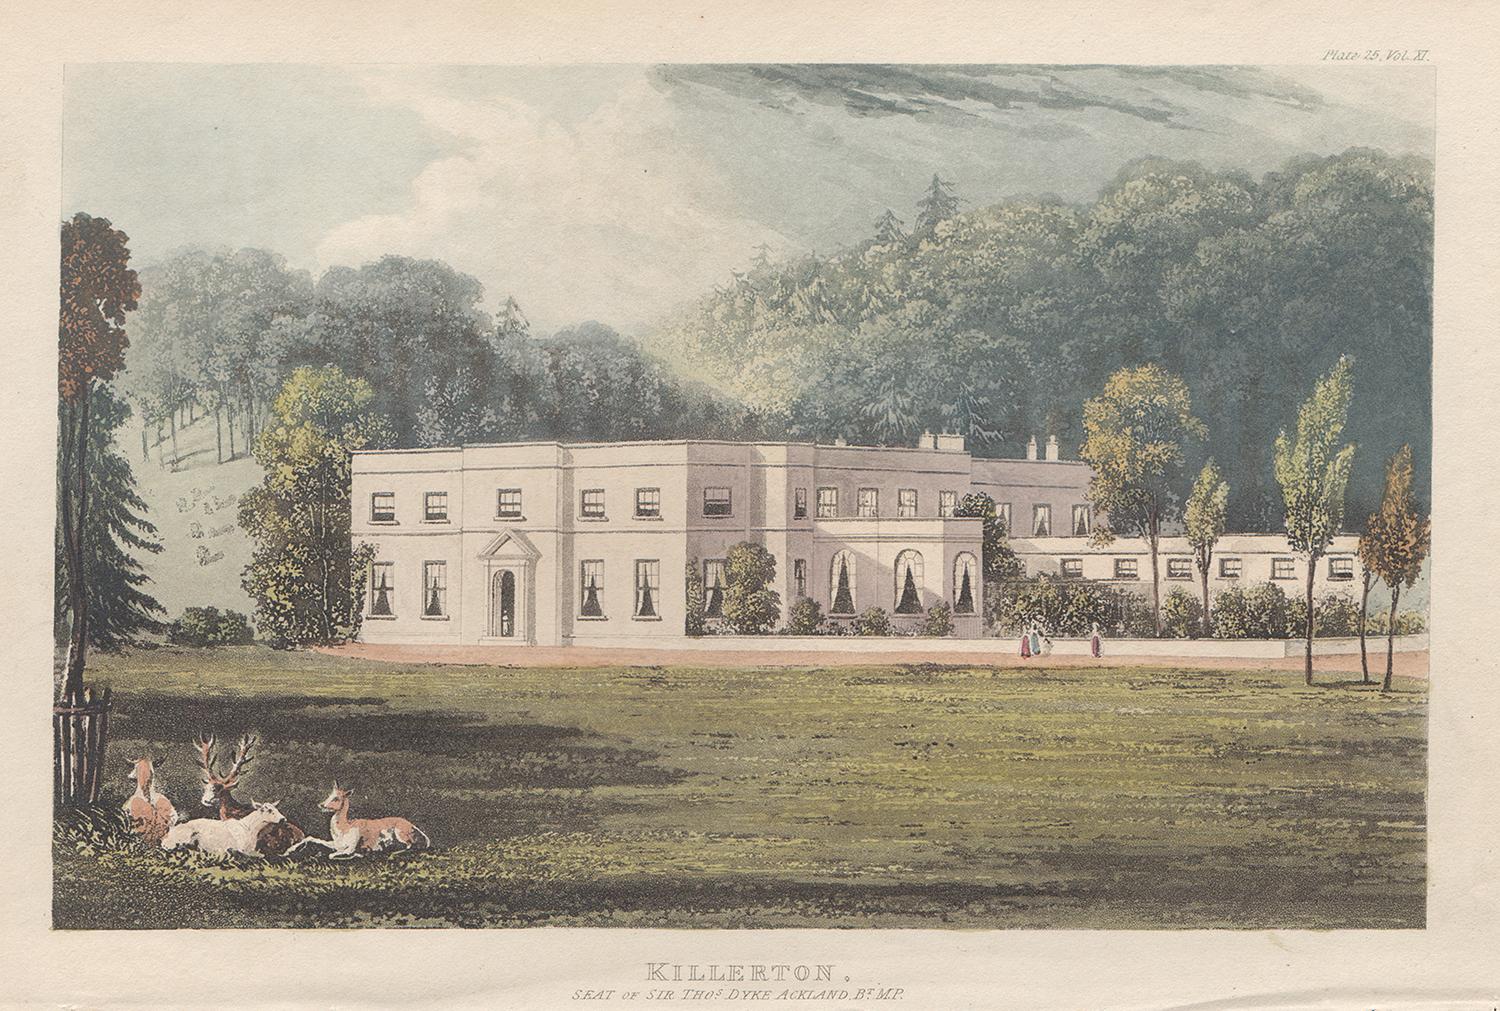 Killerton, Devon, aquatinte couleur maison de campagne de style Régence anglaise, 1818